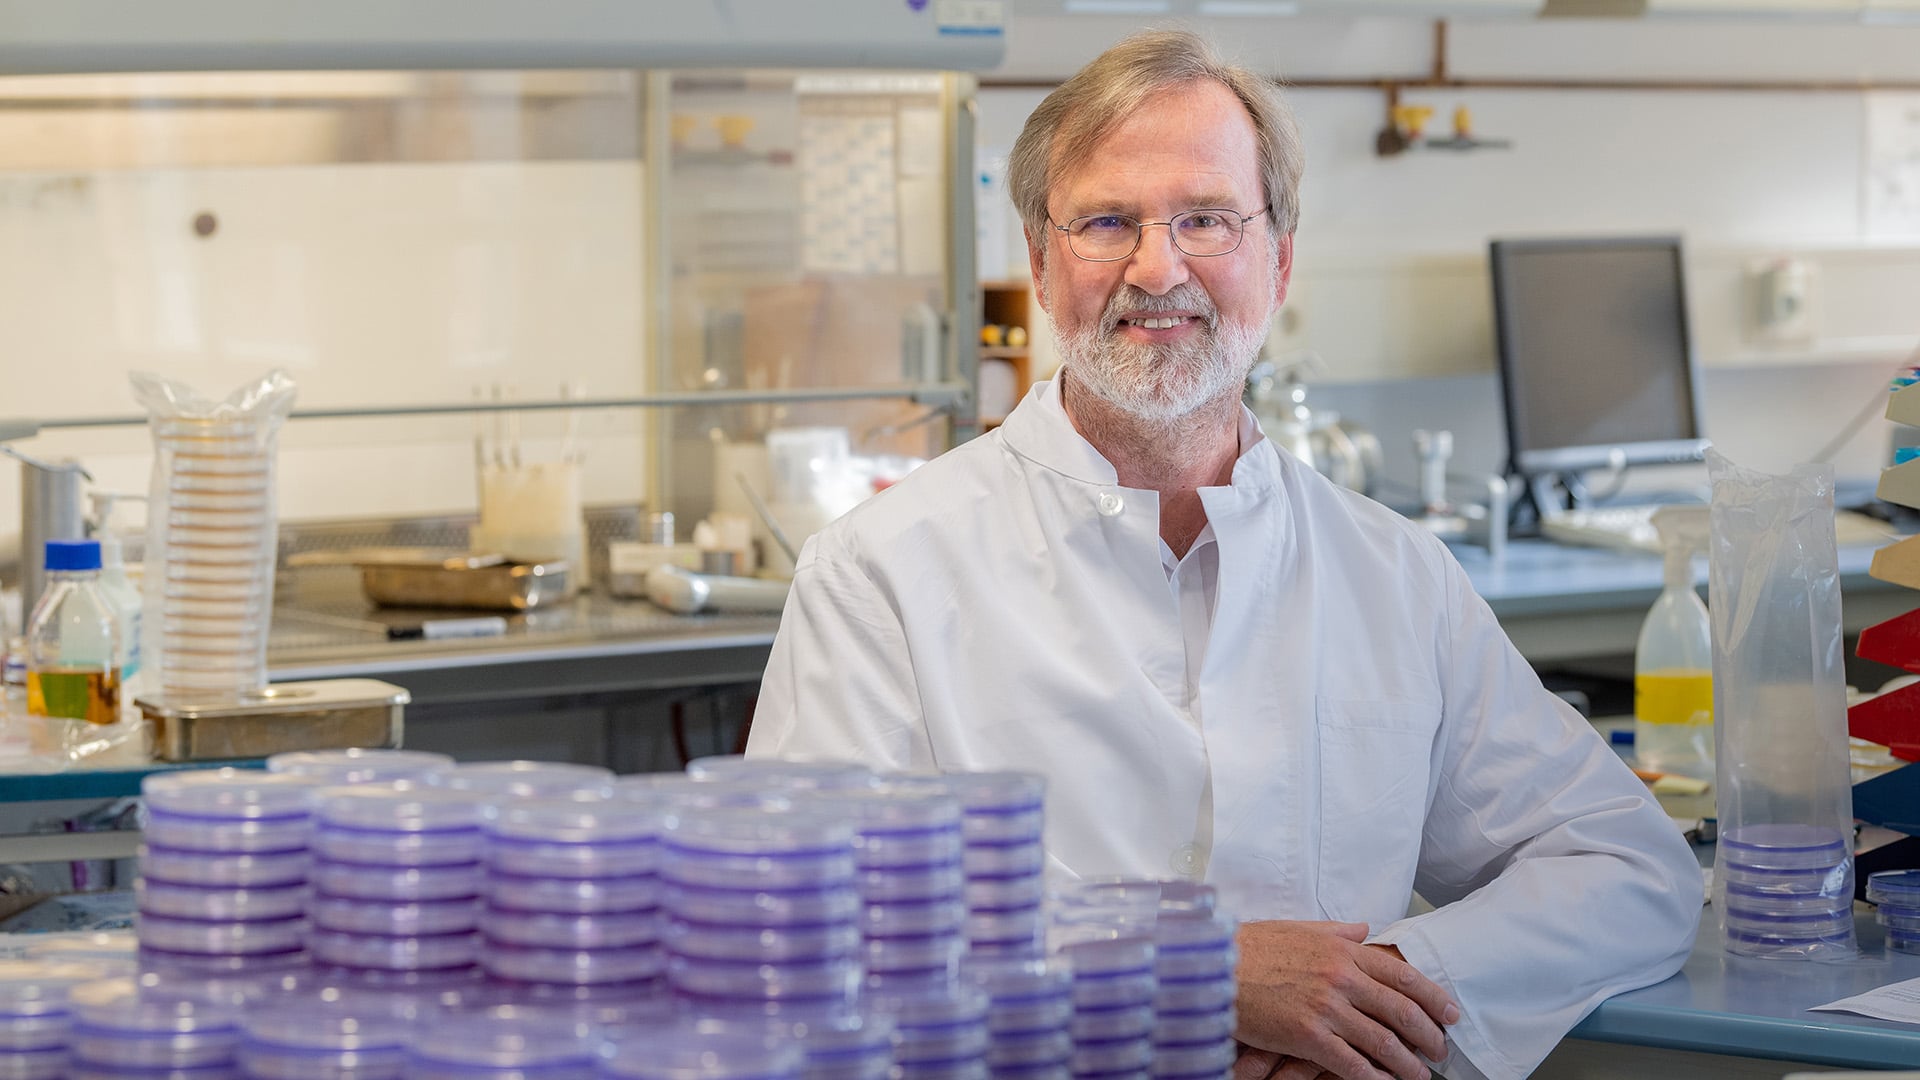 Siegfried Scherer ist Professor für Mikrobielle Ökologie an der Technischen Universität München